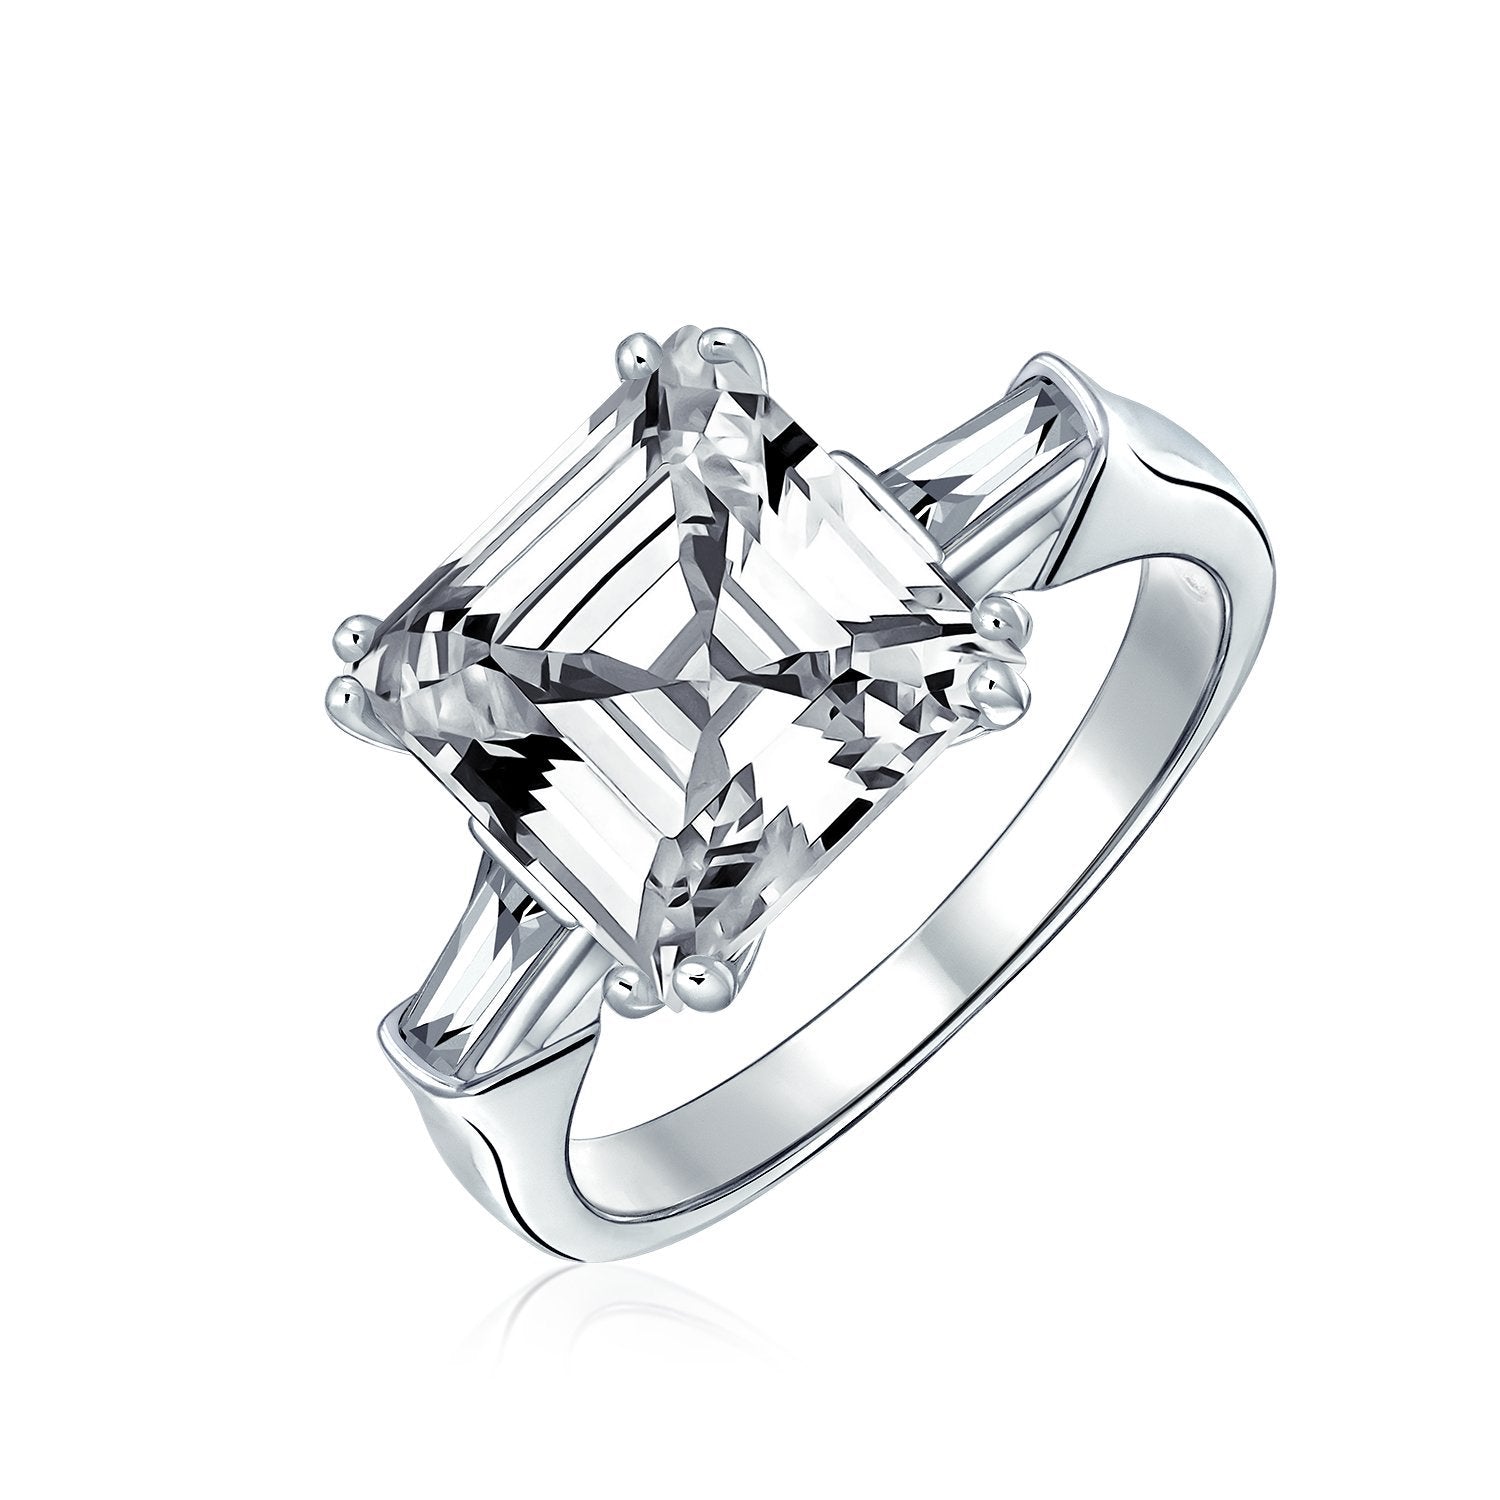 5CT Asscher Cut CZ Baguette Solitaire Engagement Ring Sterling Silver - Joyeria Lady